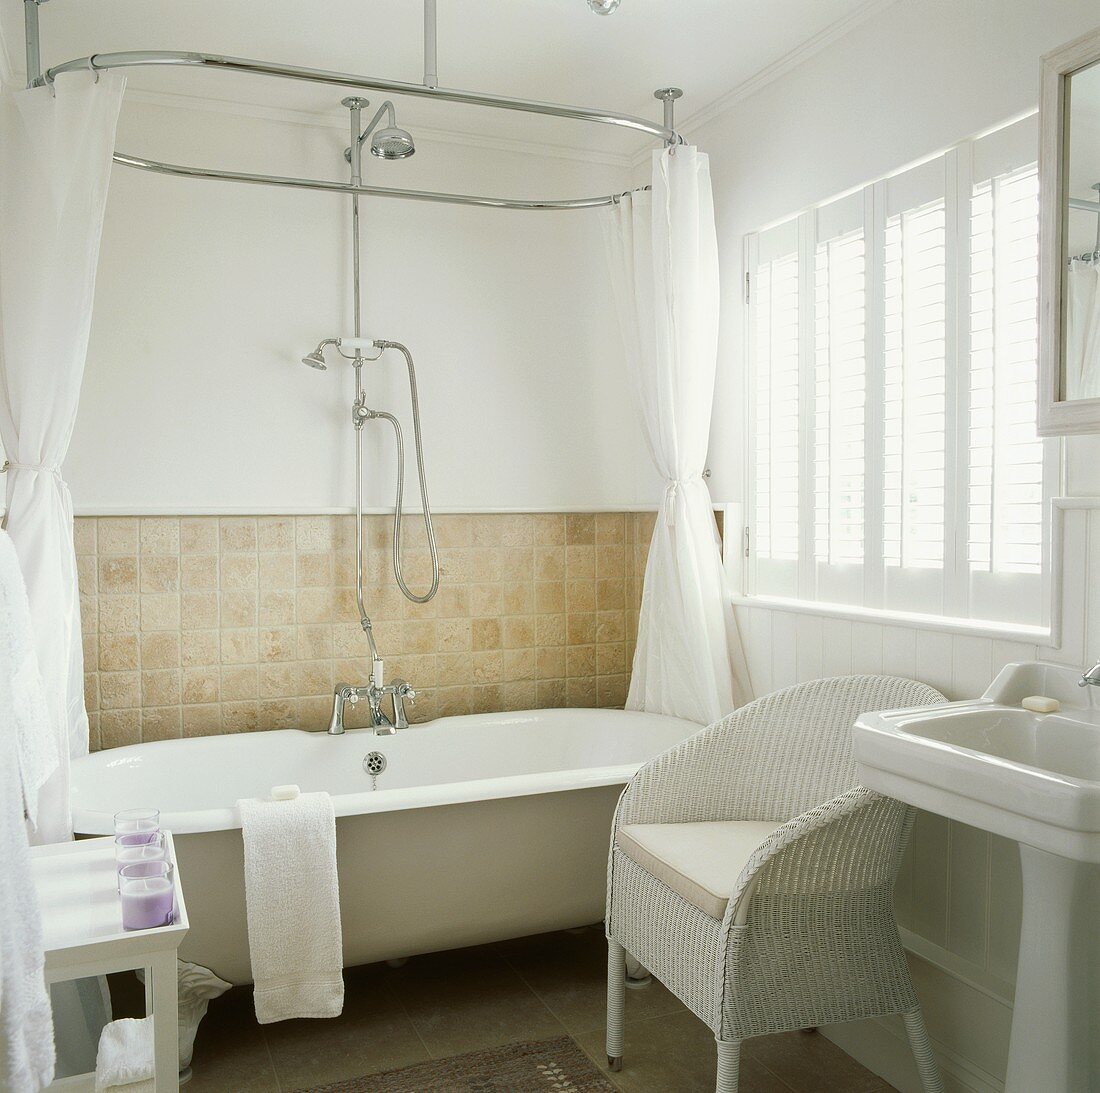 Landhaus-Badezimmer mit weißem englischen Korbstuhl neben Badewanne mit Klauenfüssen und Vorhang an ovaler Brausestange